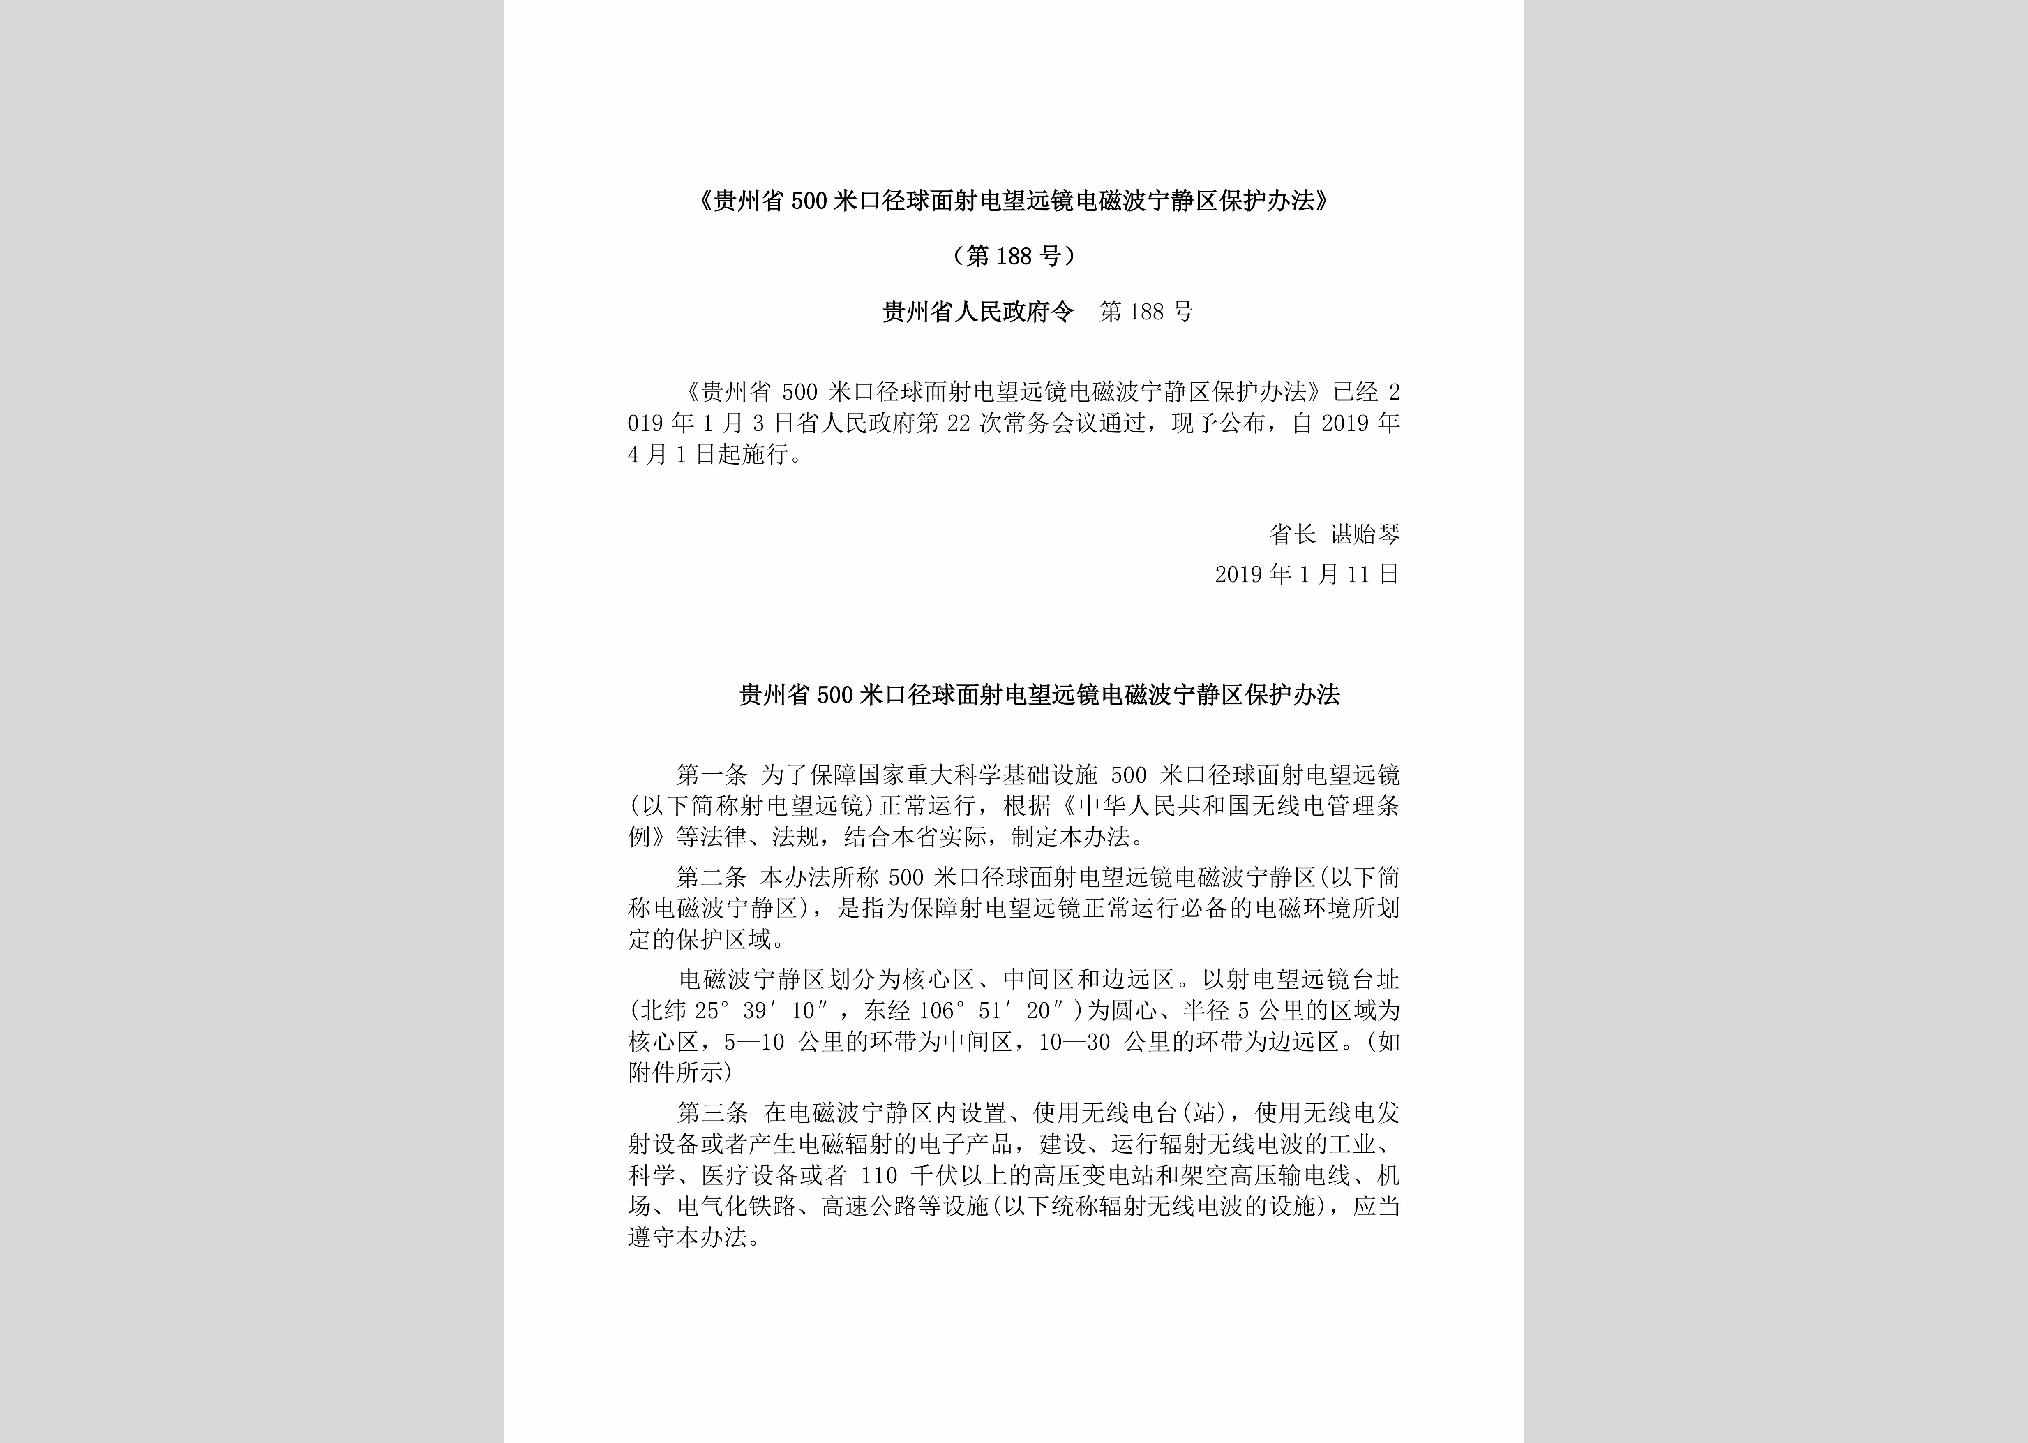 贵州省人民政府令第188号：《贵州省500米口径球面射电望远镜电磁波宁静区保护办法》